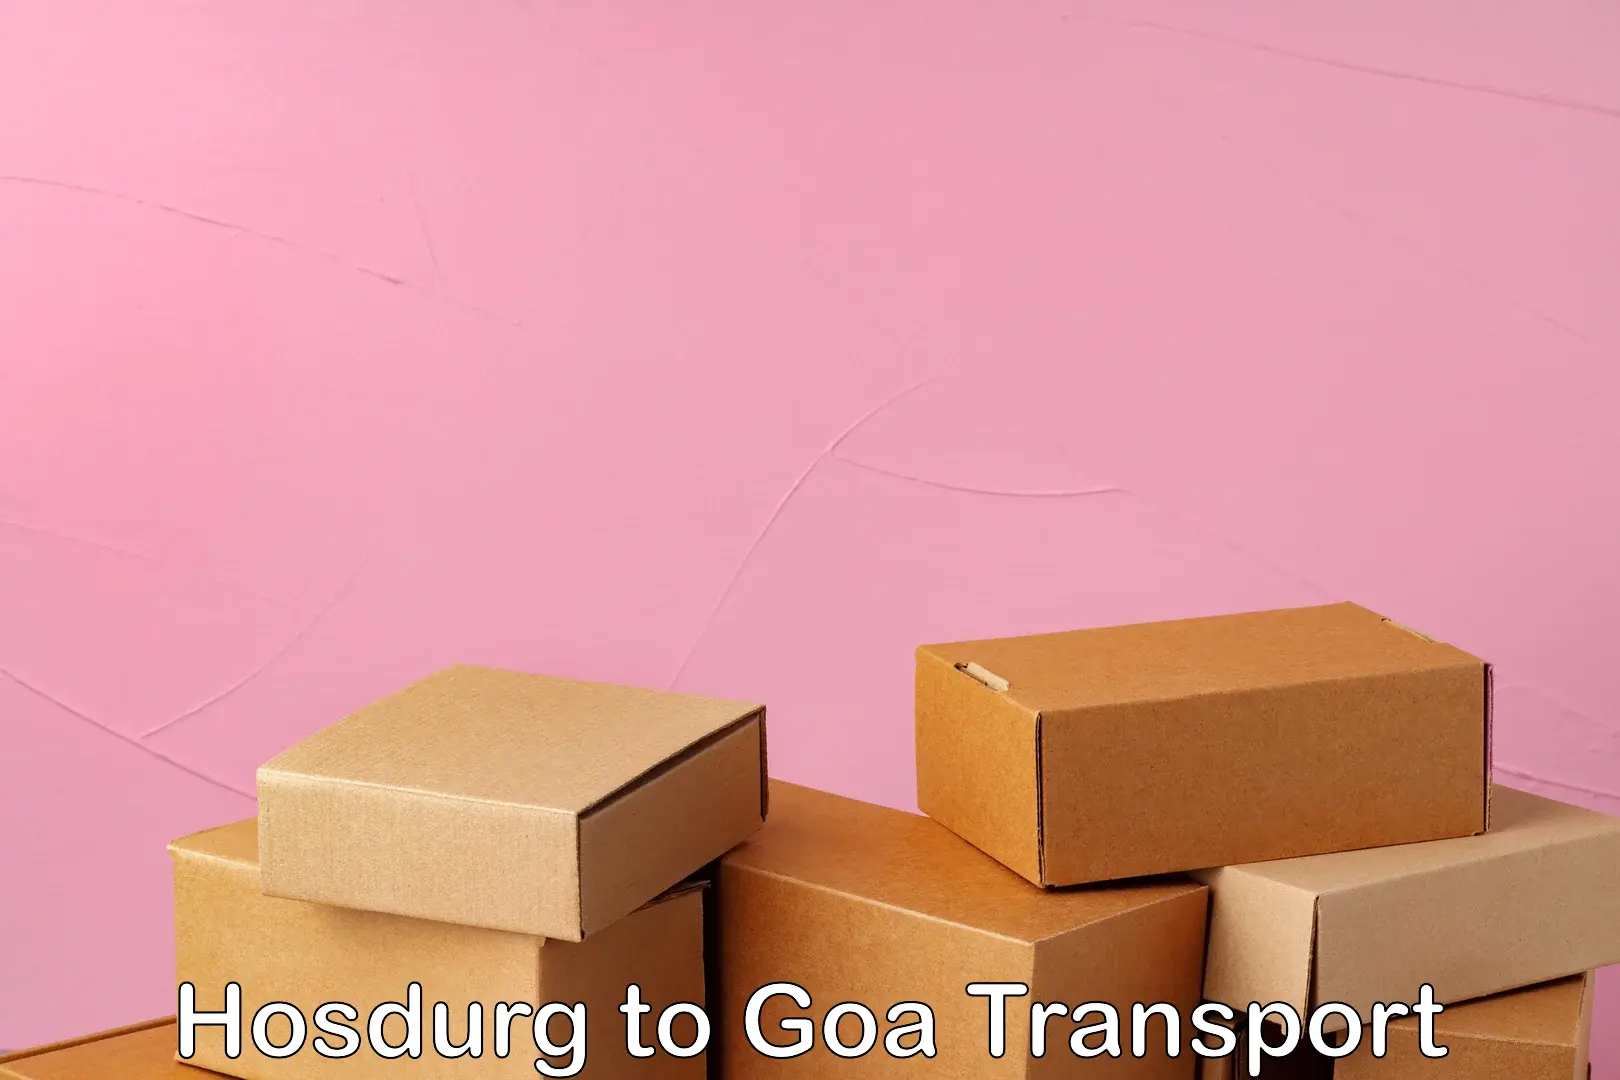 Express transport services Hosdurg to IIT Goa